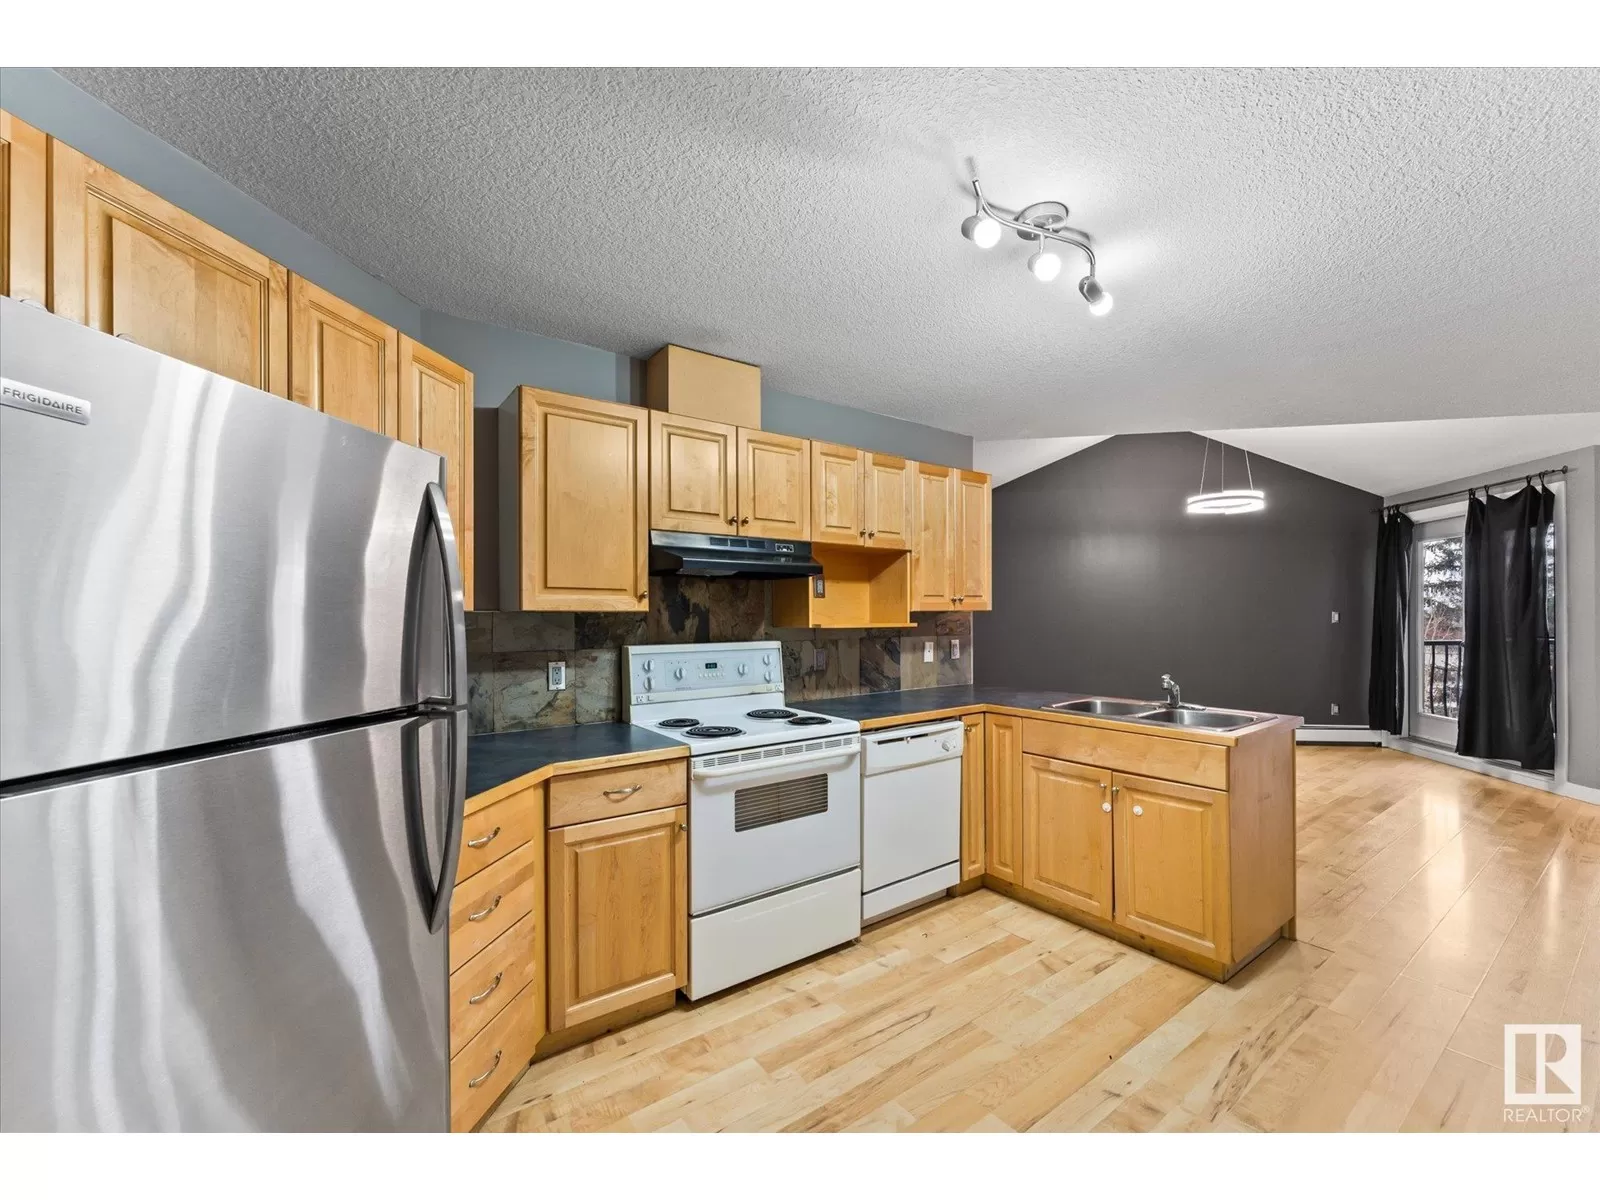 Apartment for rent: #204 9336 Jasper Av Nw, Edmonton, Alberta T5H 3T5